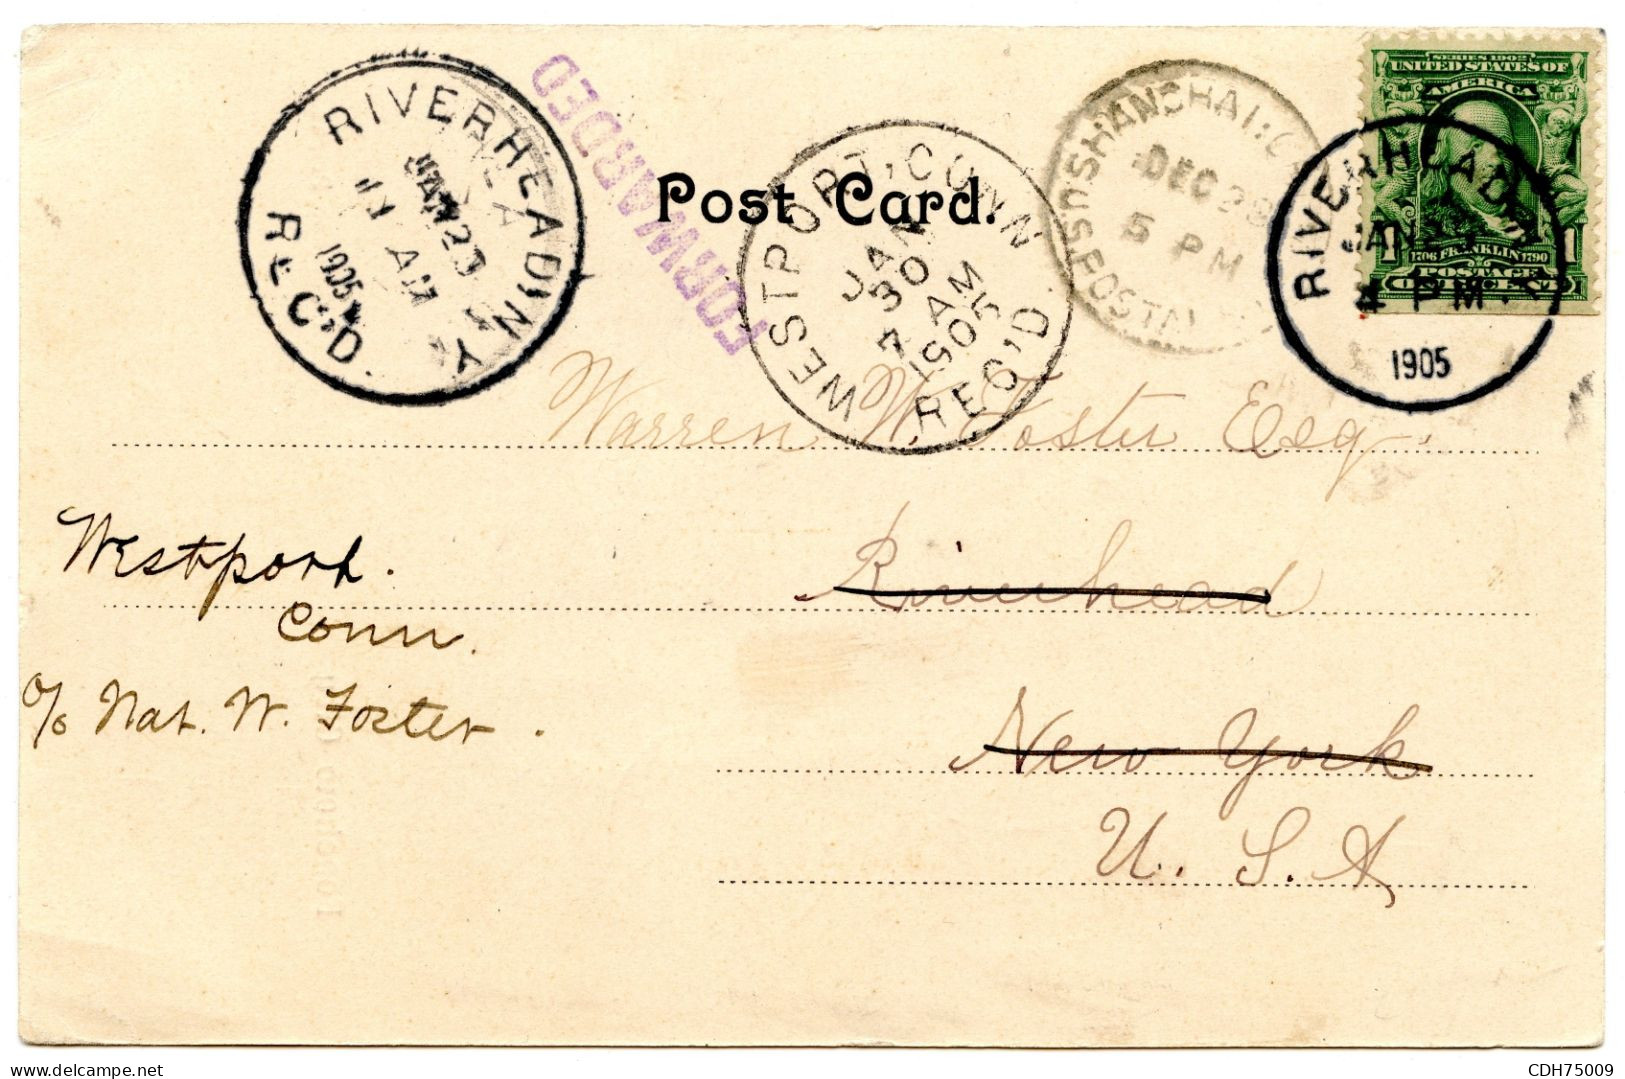 ETATS UNIS - CARTE POSTALE DE SHANGHAI POUR RIVERHEAD REEXPEDIEE A WESTPORT, 1905 - Storia Postale